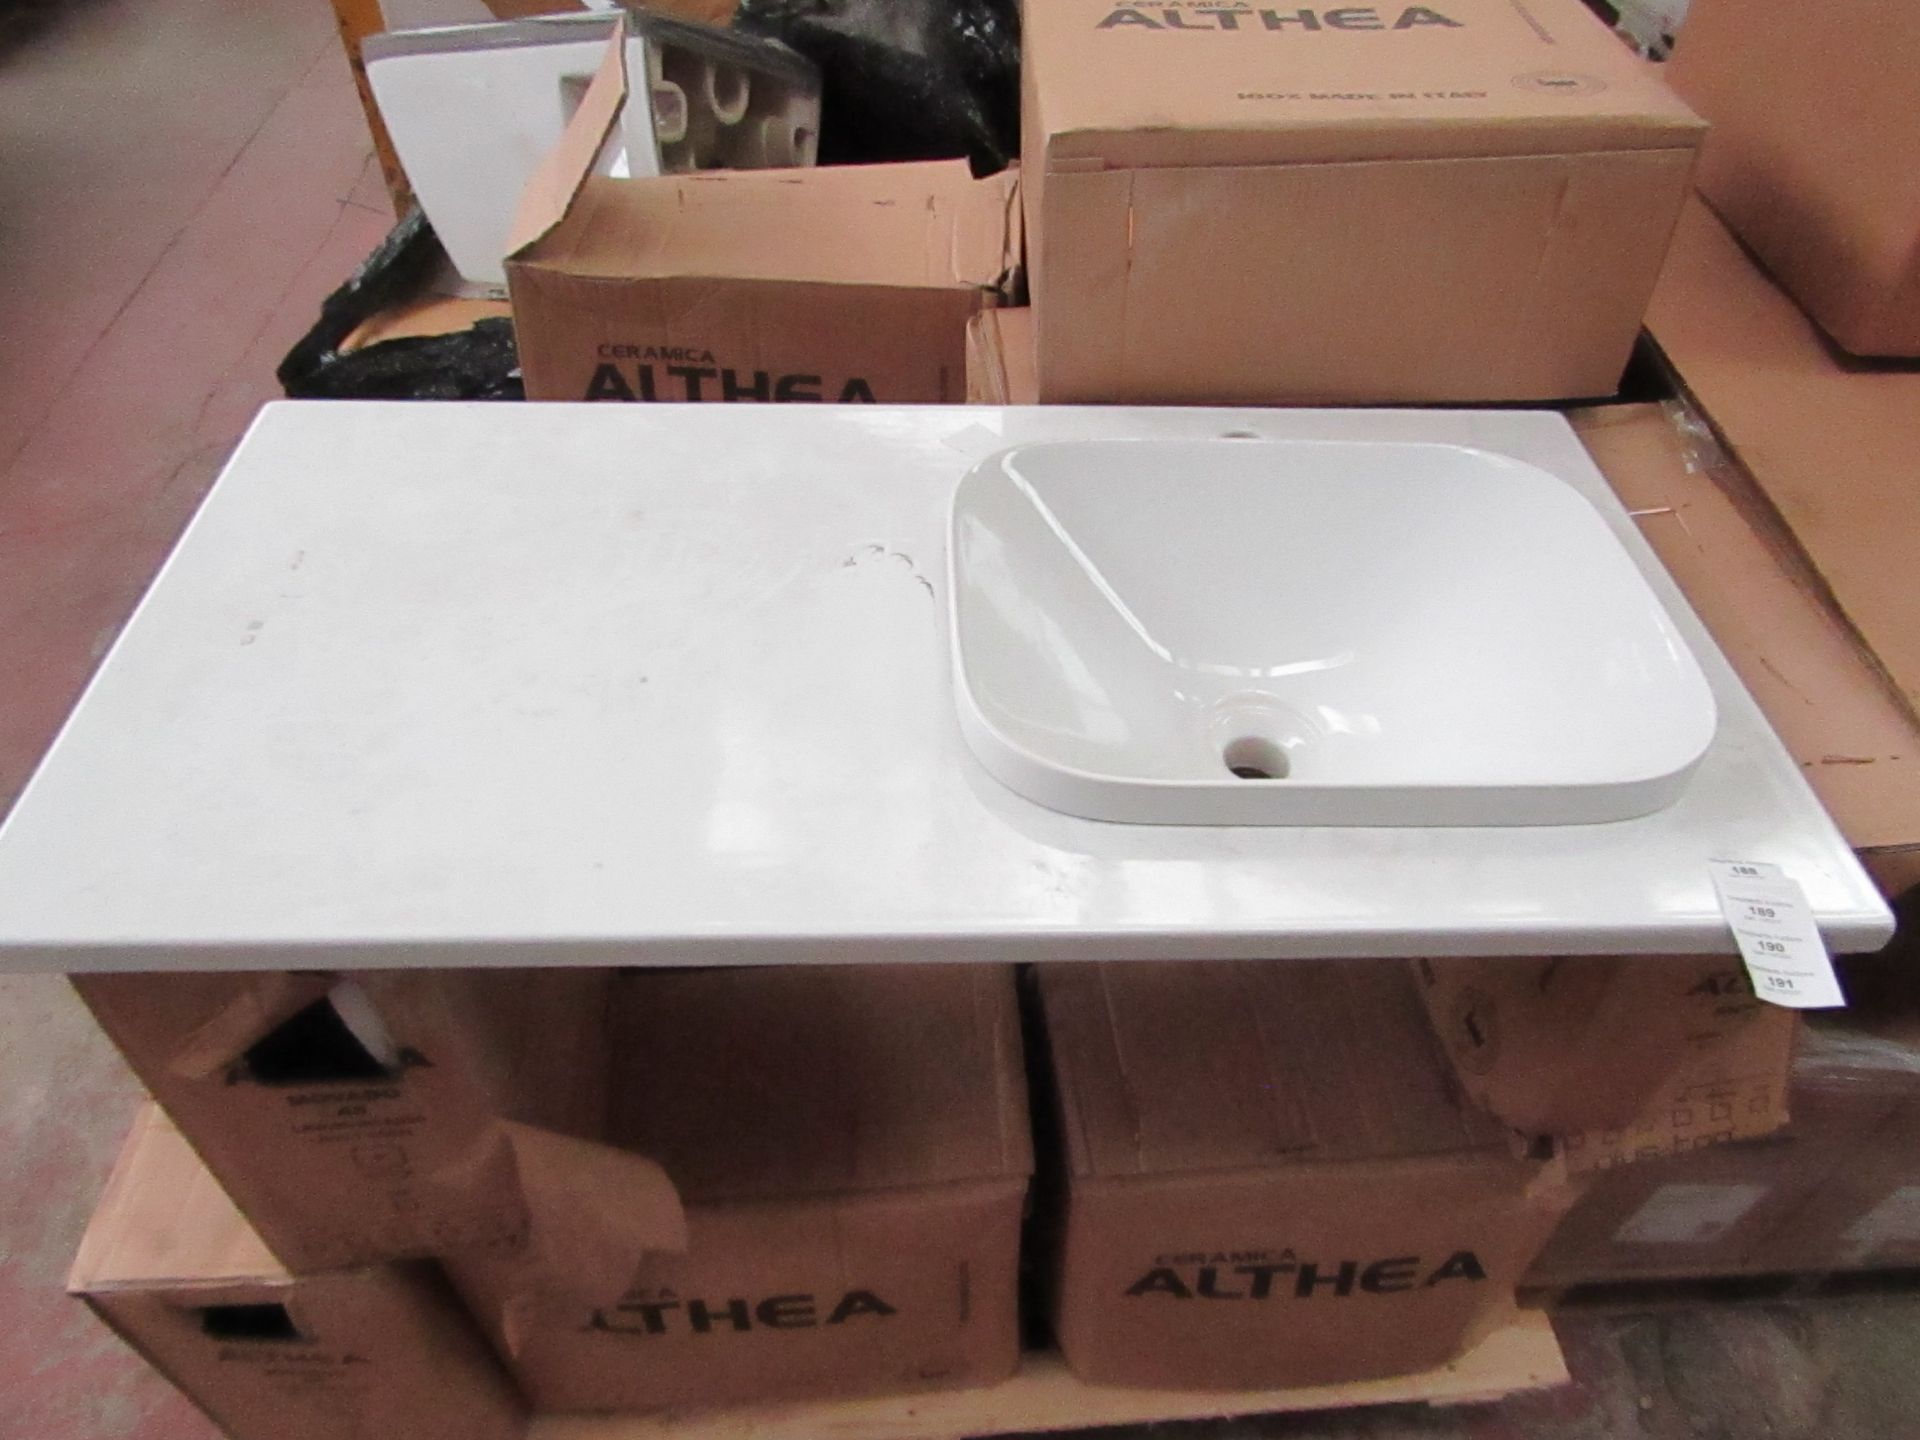 Althea Ceramica Movado ceramic shelf set includes a Movando 45 in set sink and a 1000 x 500mm